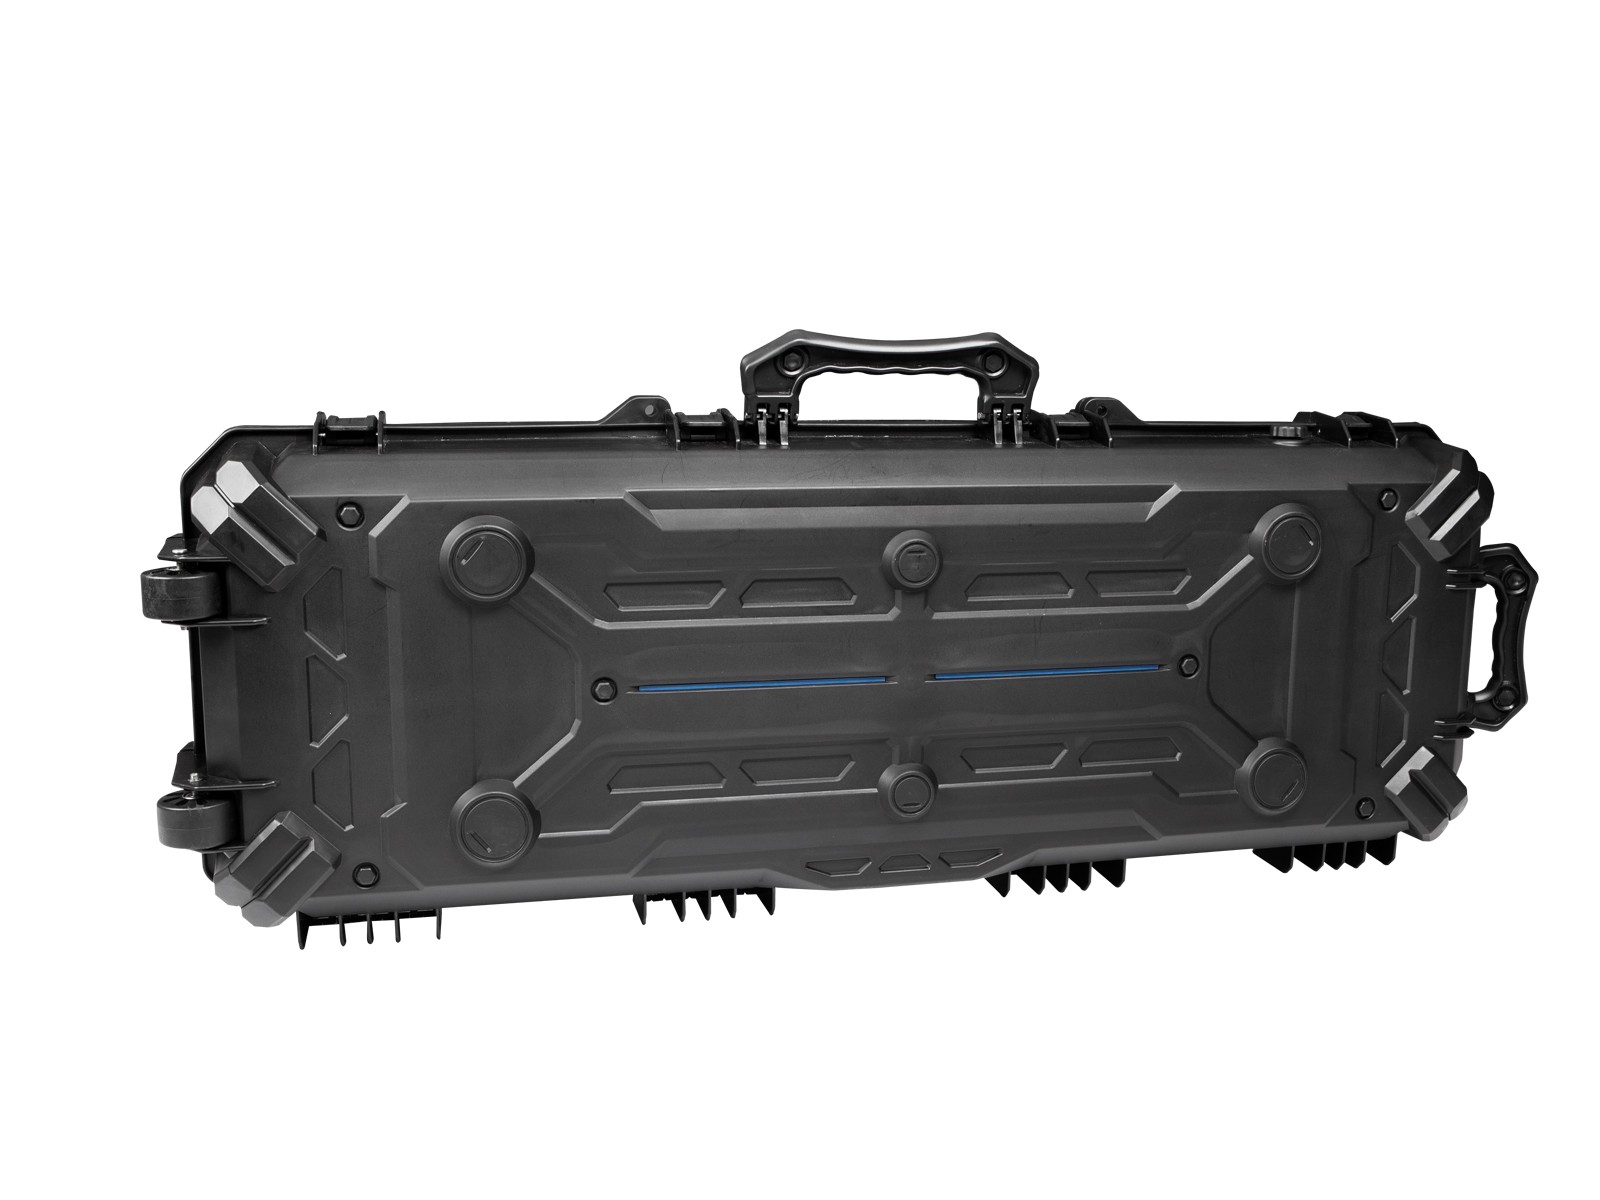 ASG - Malette de transport étanche 106cm - mousse prédécoupée - Noire - ABS  - Elite Airsoft